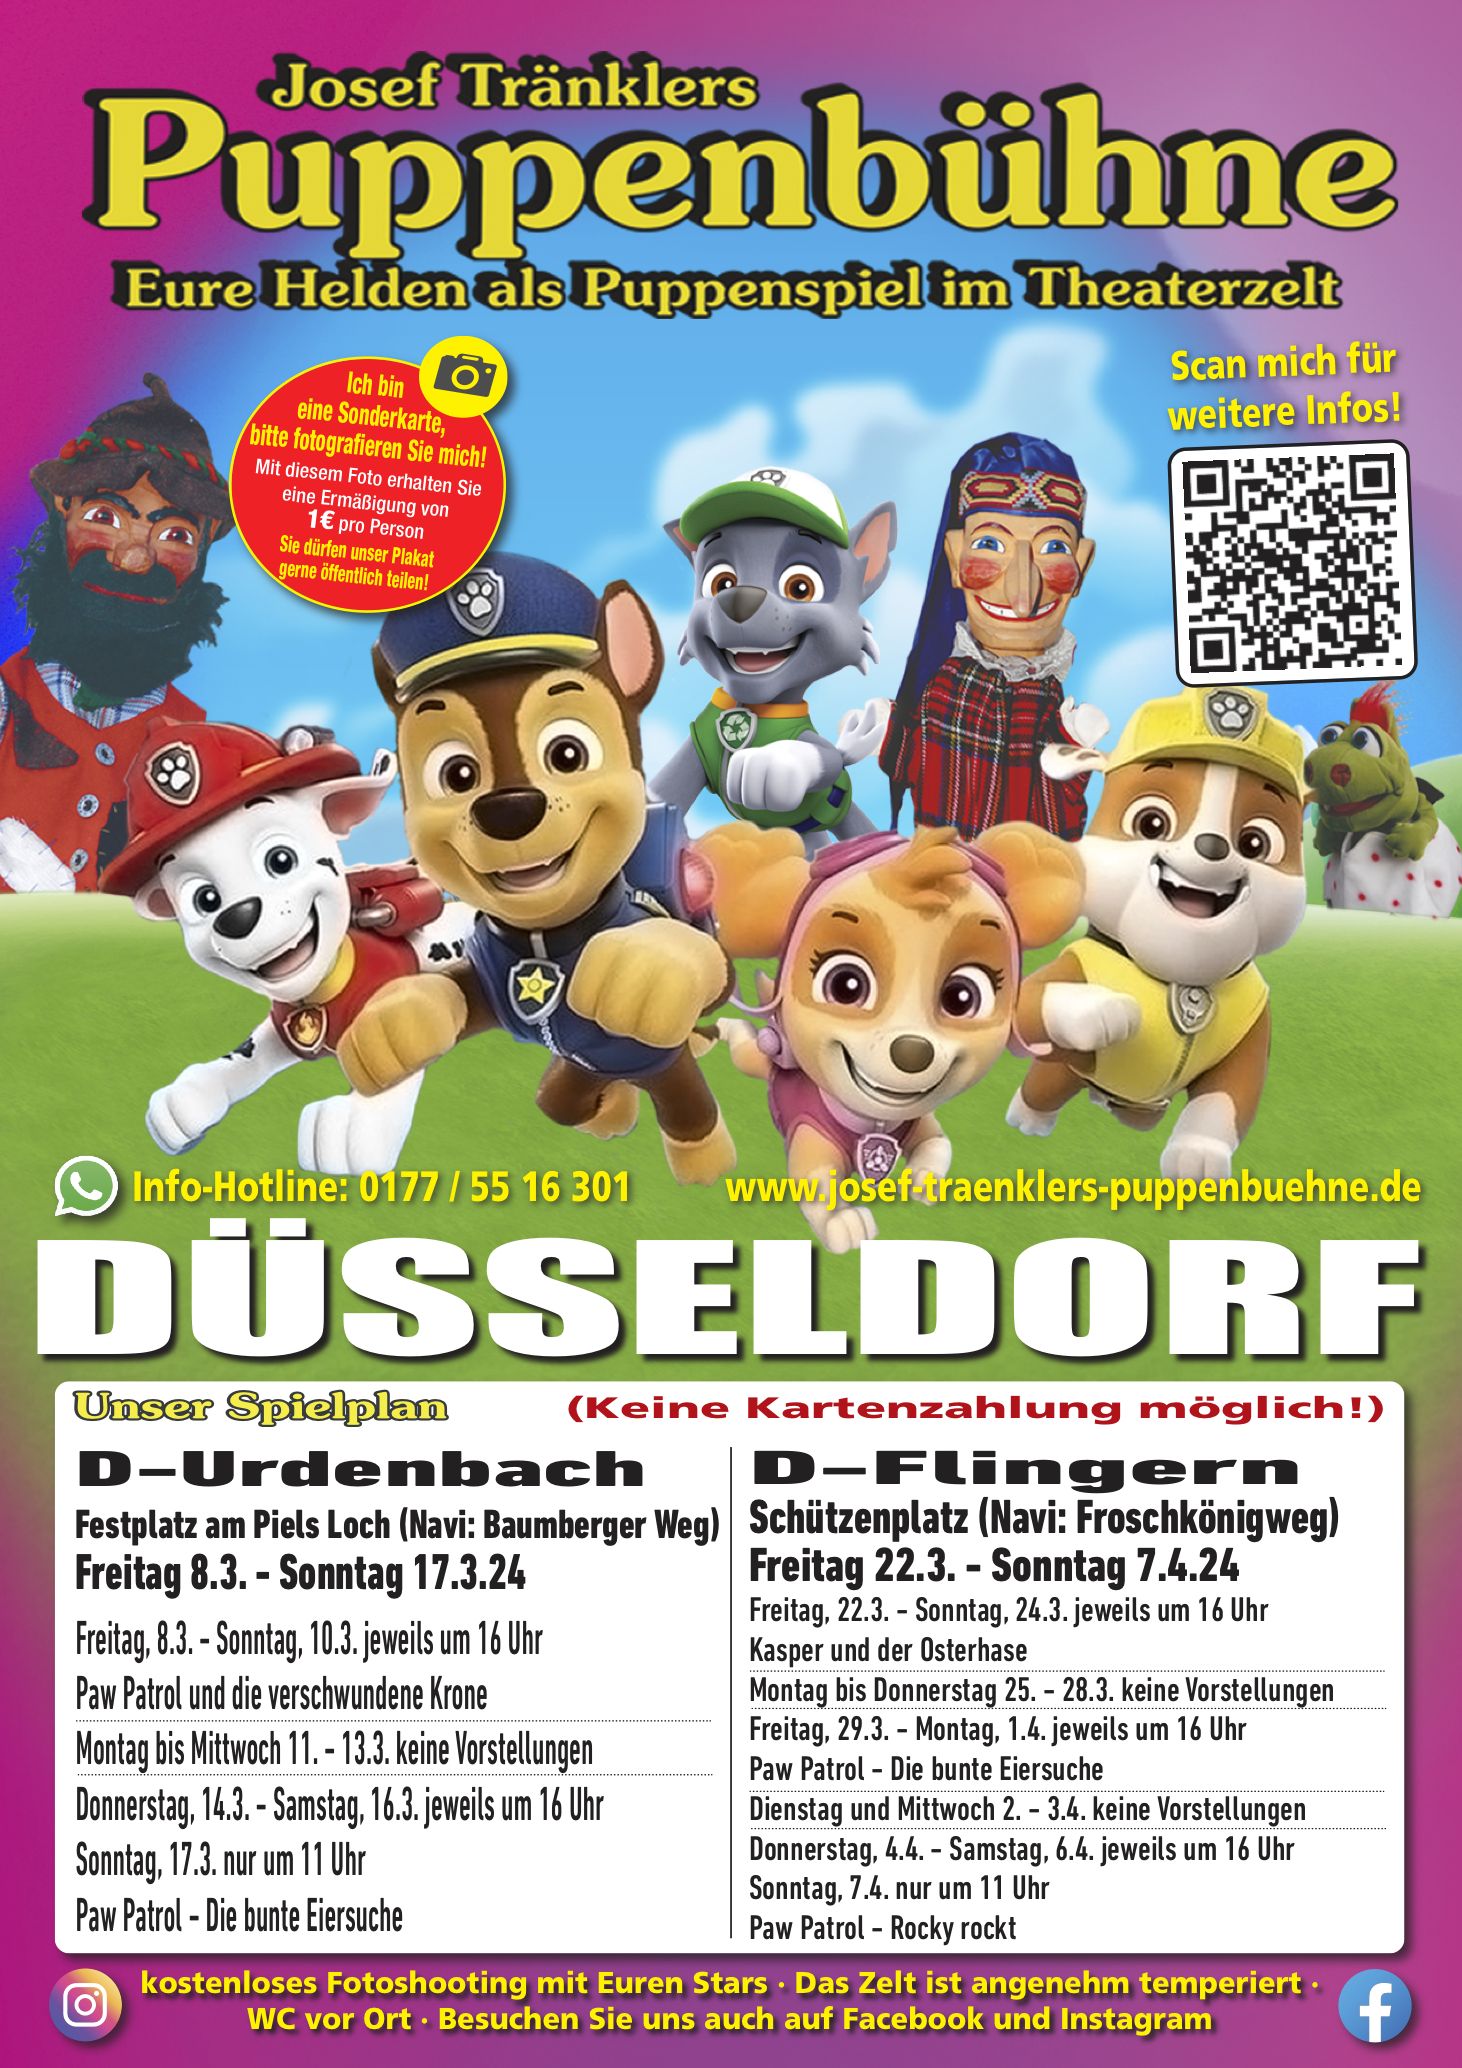 Josef Tränklers Puppenbühne gastiert in Düsseldorf-Flingern